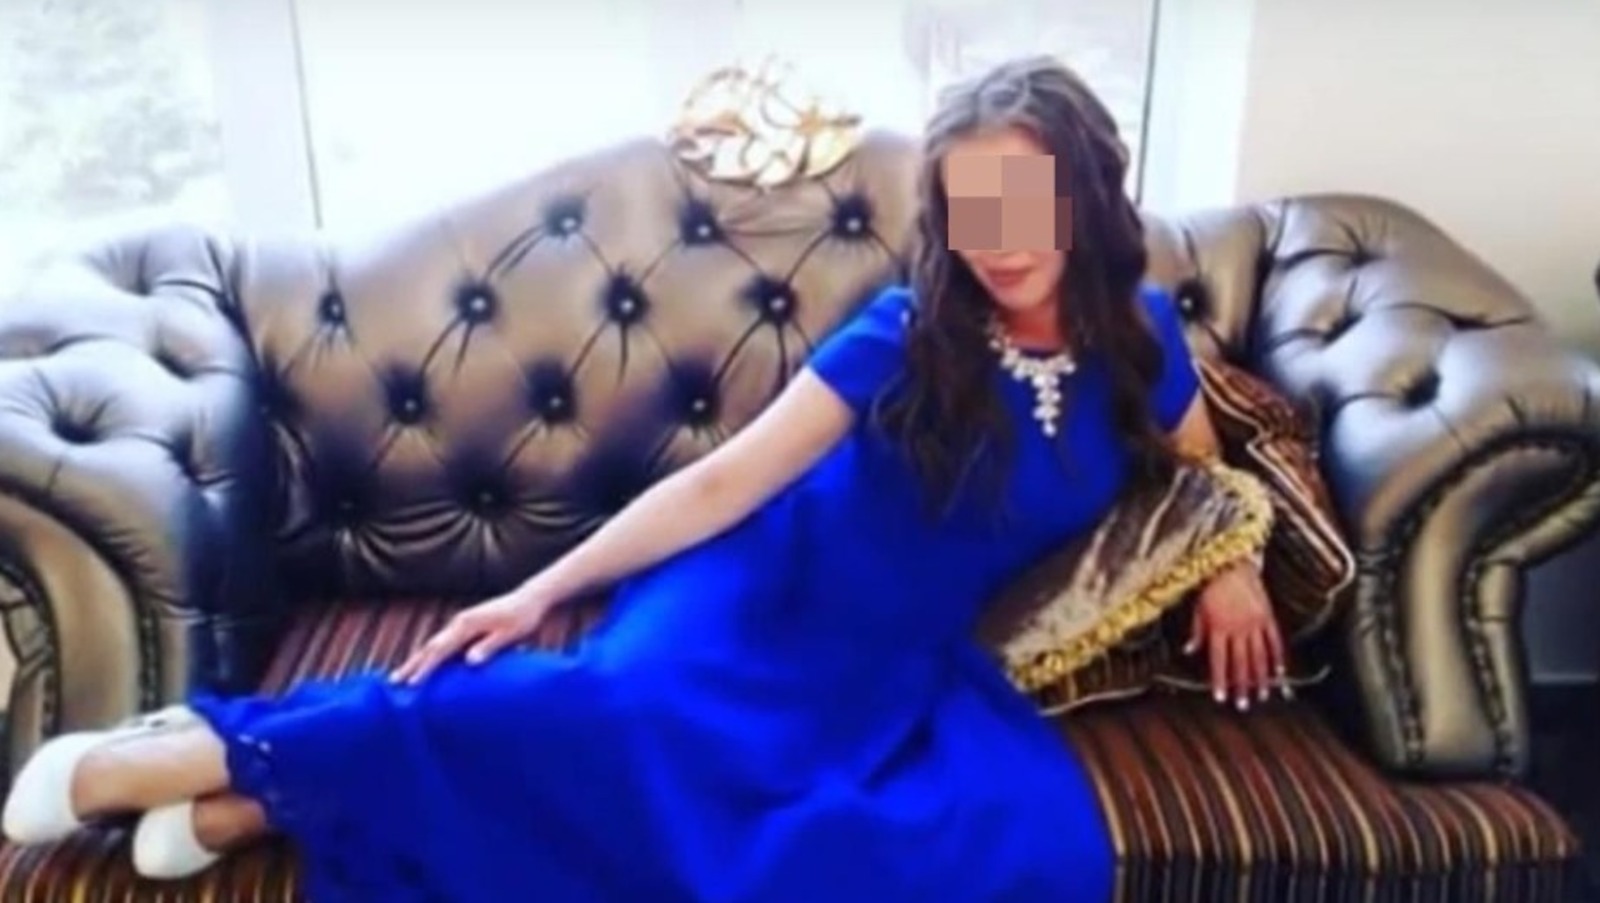 Избивал и публиковал интимные фотографии: в Башкирии полиция задержала преследователя молодой девушки